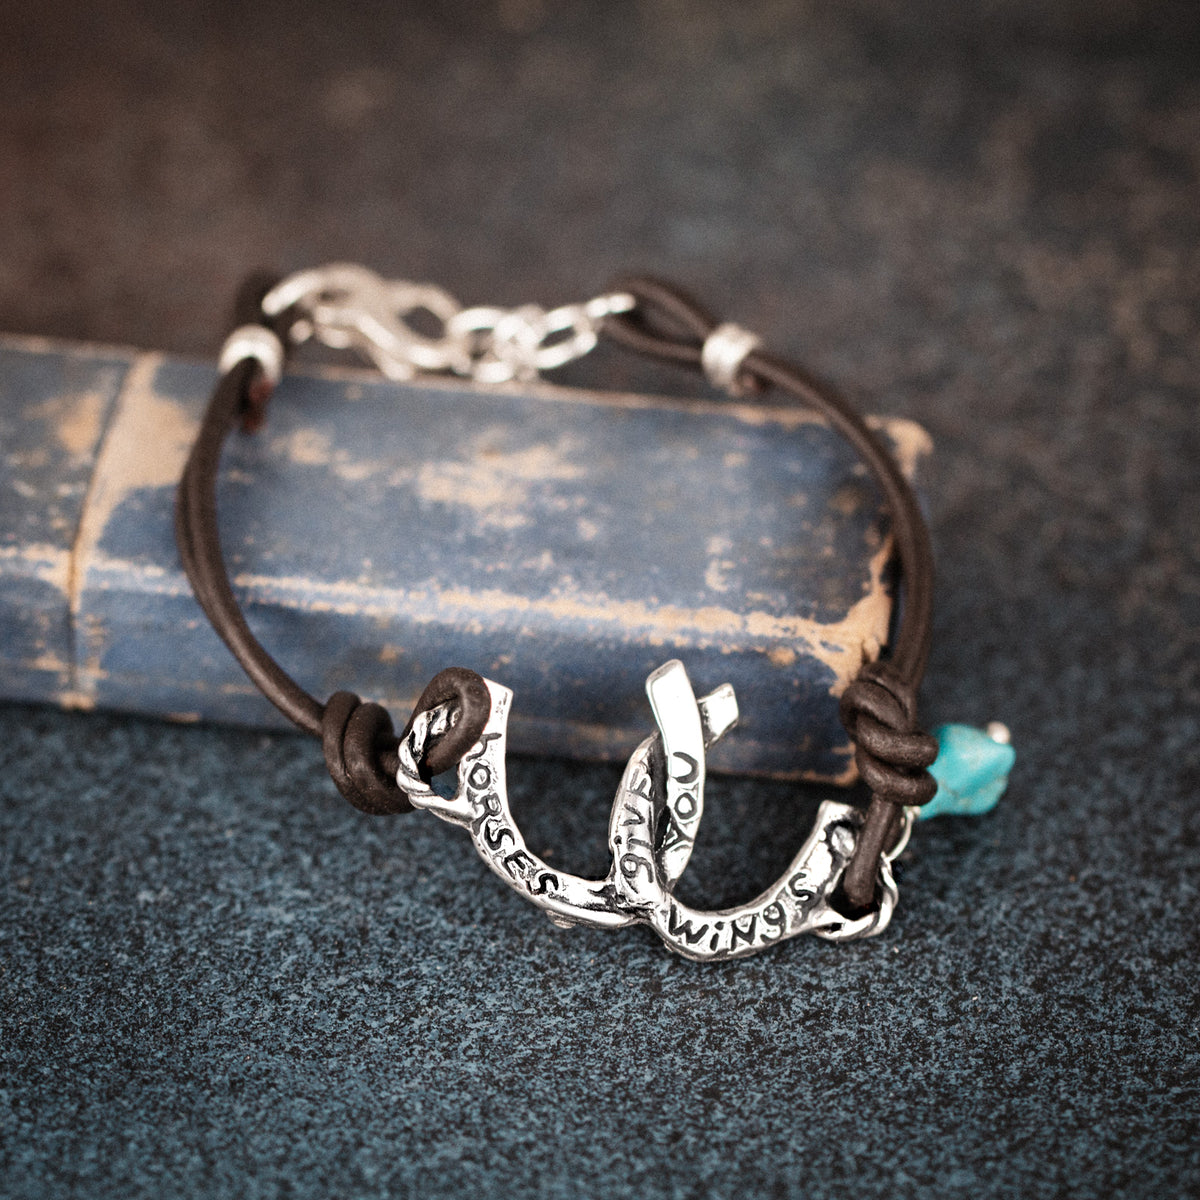 leather bracelet with horseshoes